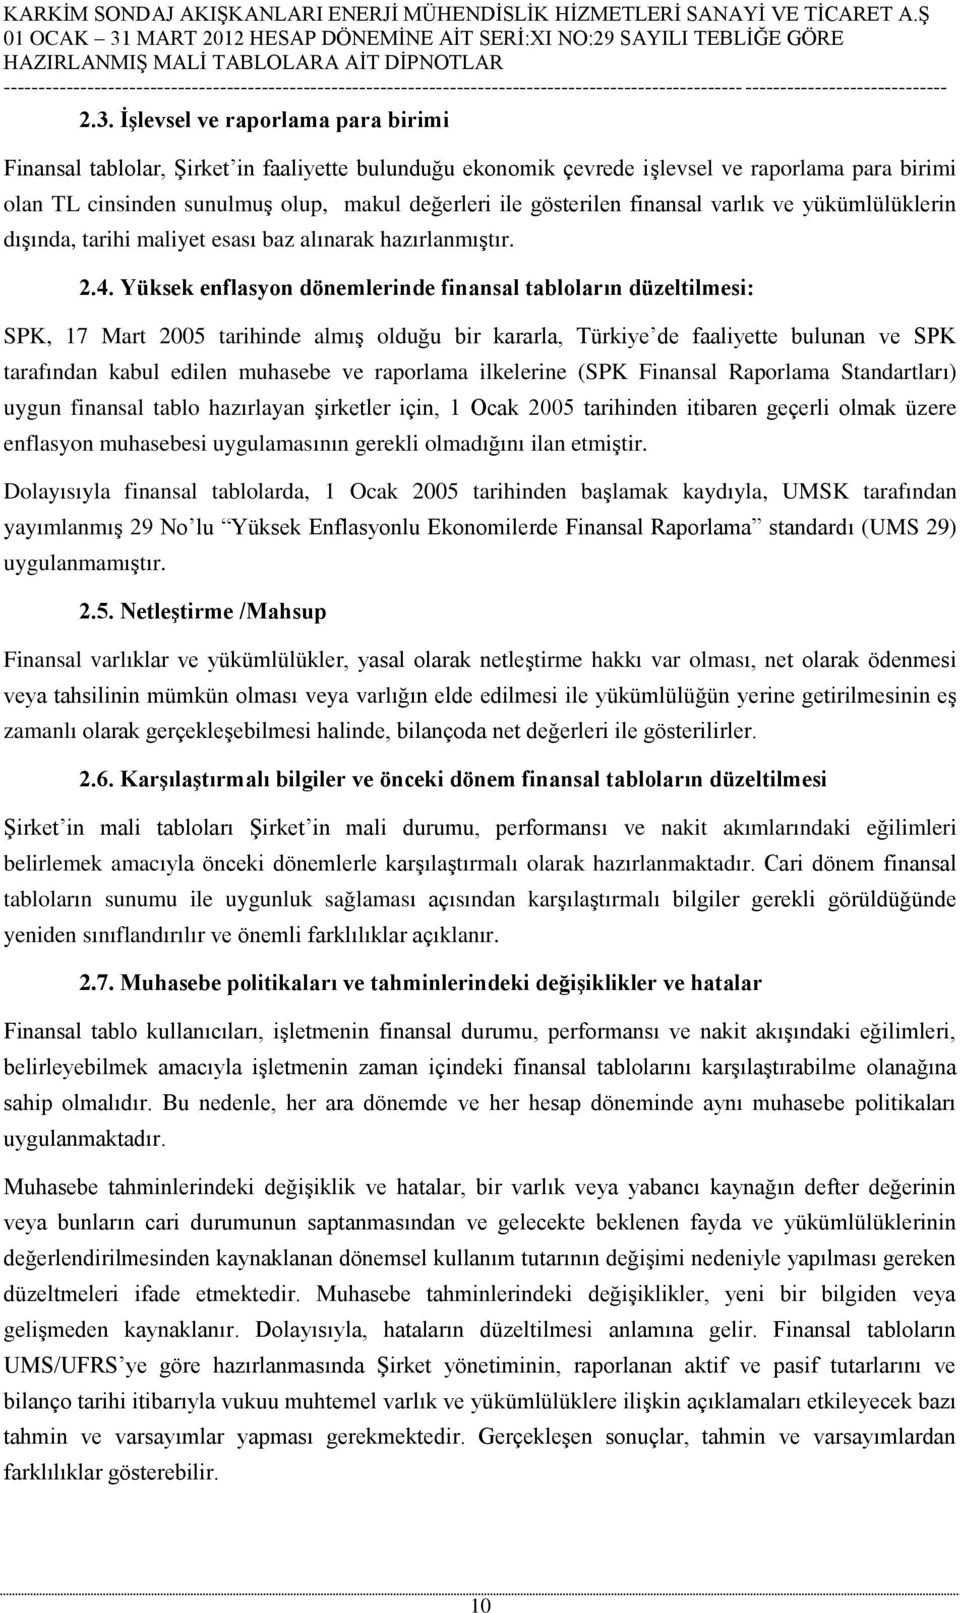 Yüksek enflasyon dönemlerinde finansal tabloların düzeltilmesi: SPK, 17 Mart 2005 tarihinde almış olduğu bir kararla, Türkiye de faaliyette bulunan ve SPK tarafından kabul edilen muhasebe ve